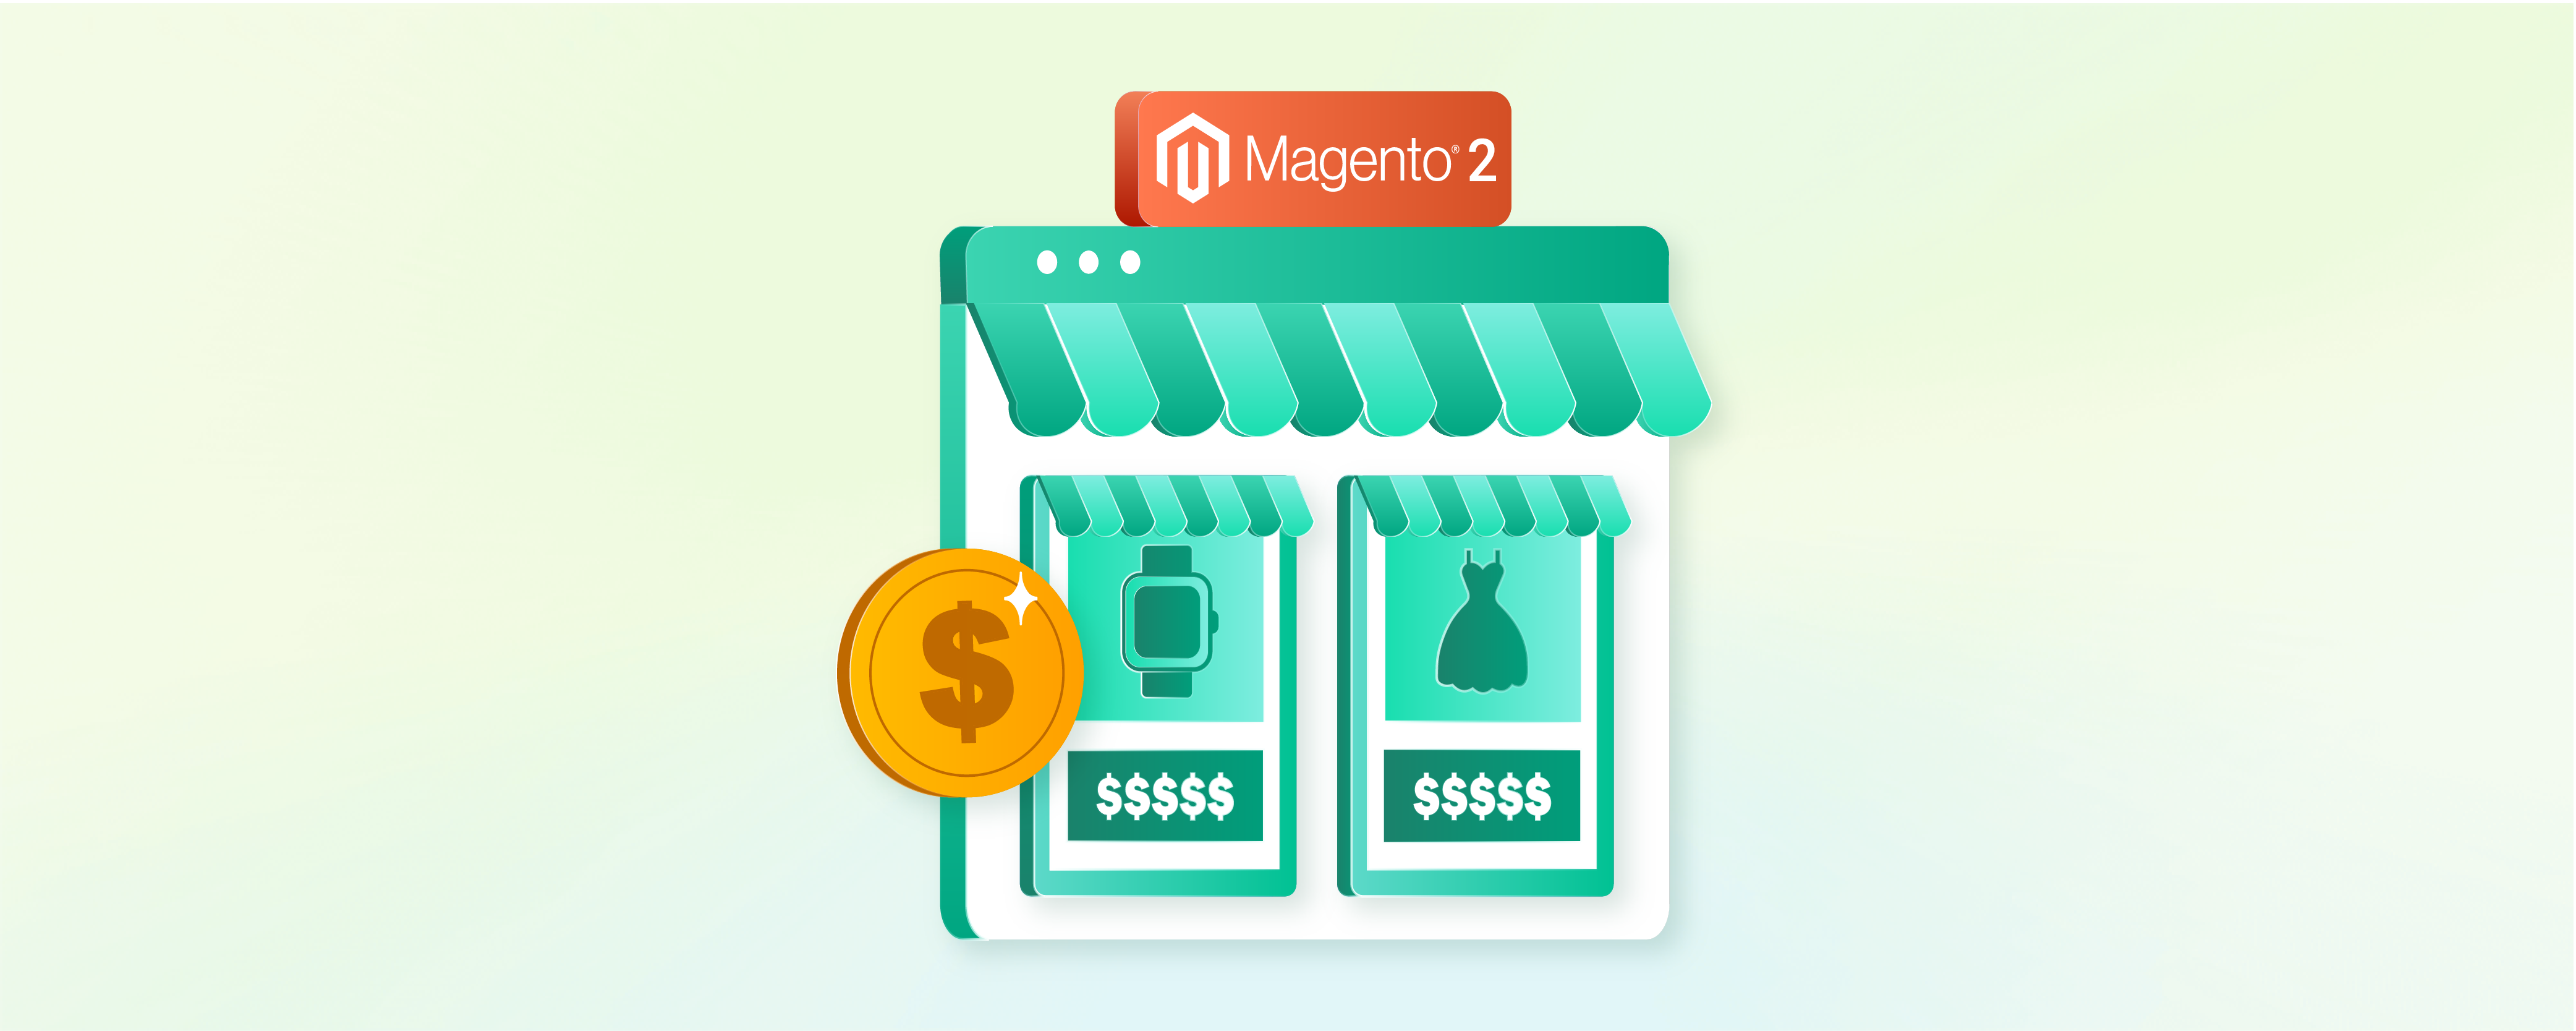 How to Configure Magento 2 Price Scope?